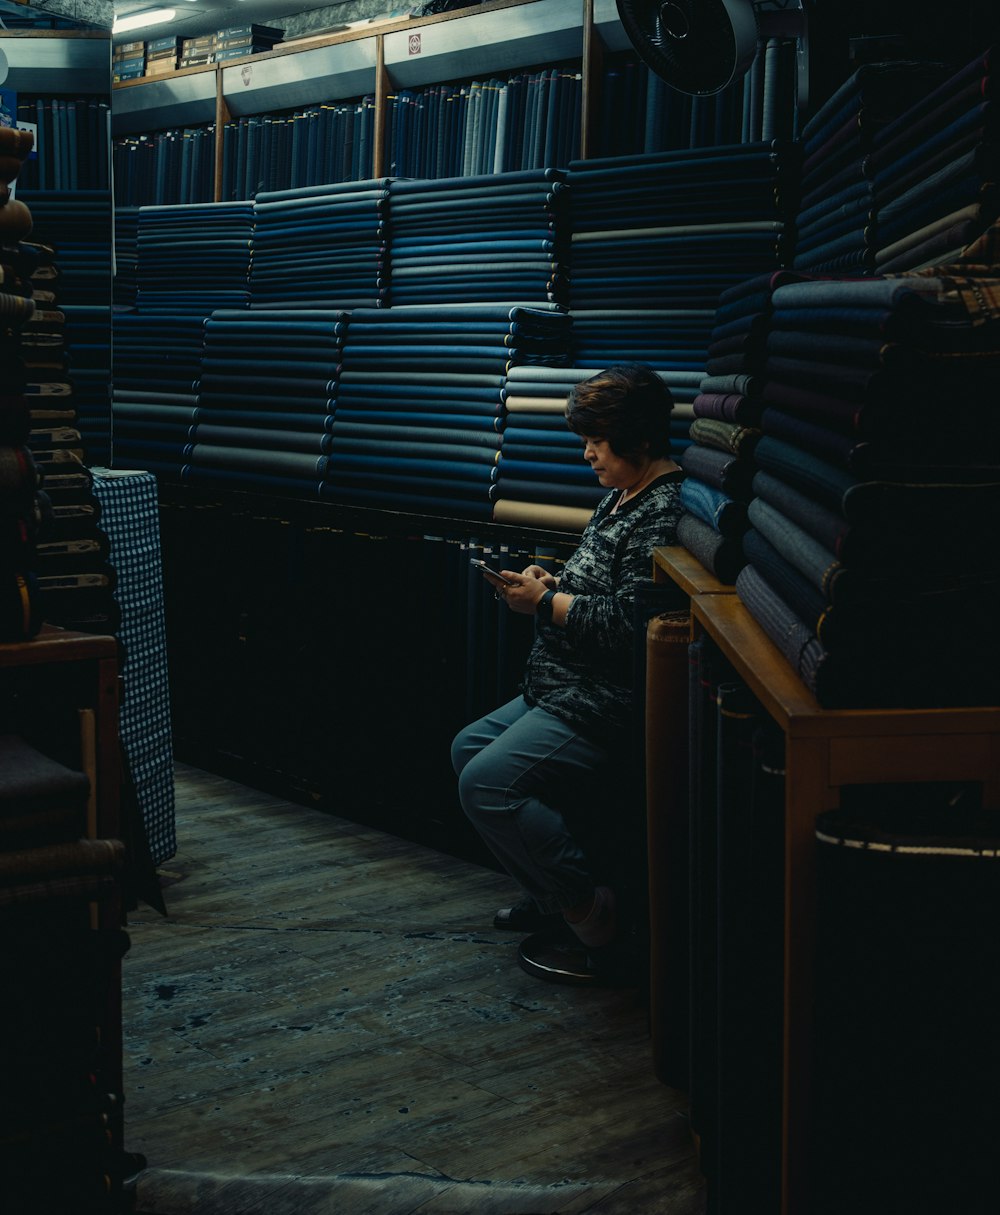 un homme assis sur une chaise dans une pièce remplie de piles de livres